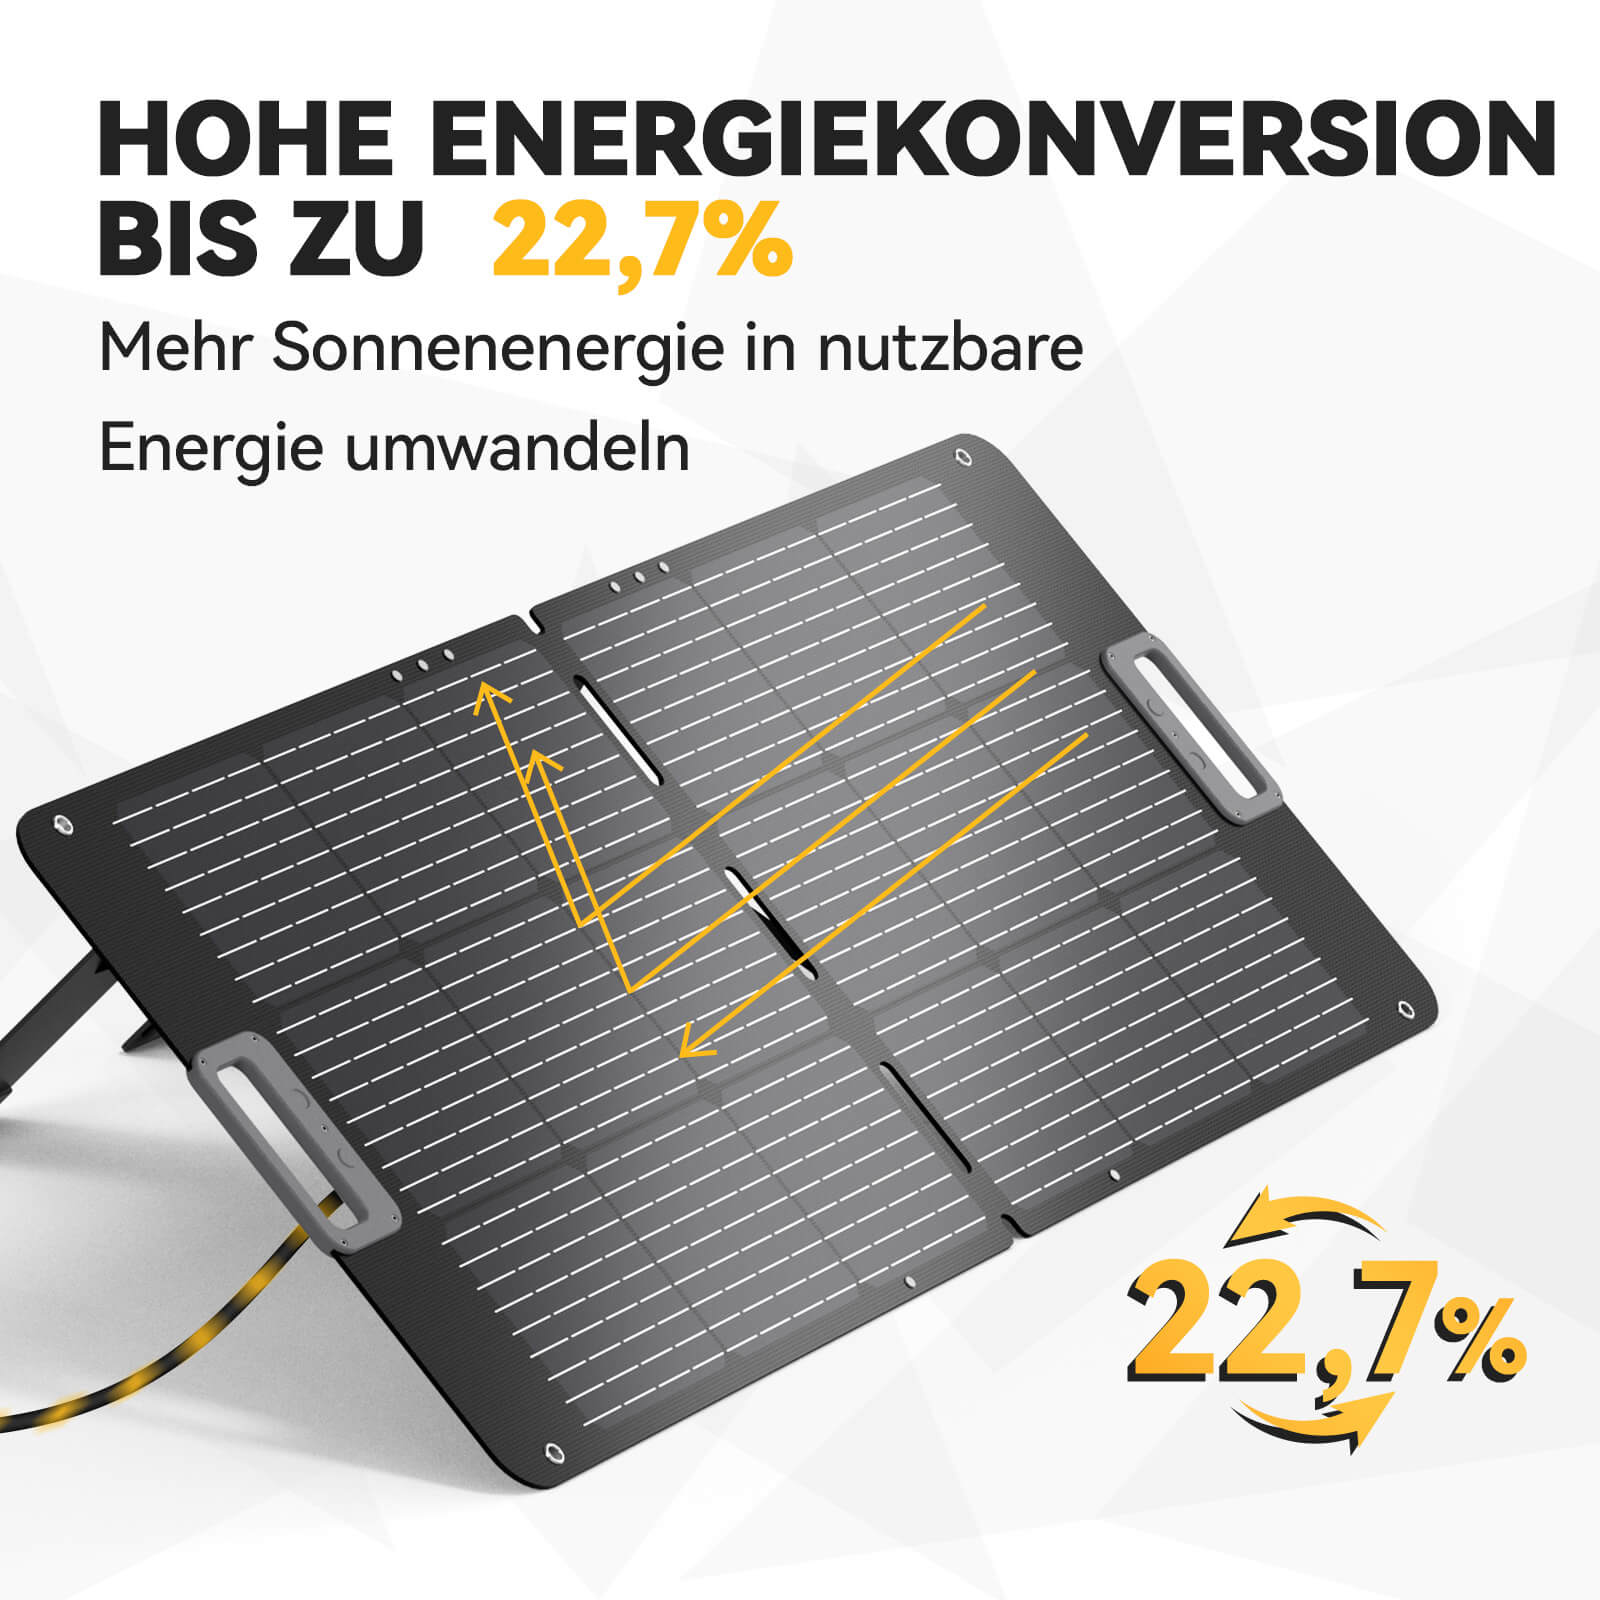 Power Queen 100W tragbares Solarpanel für P300 tragbare Powerstation